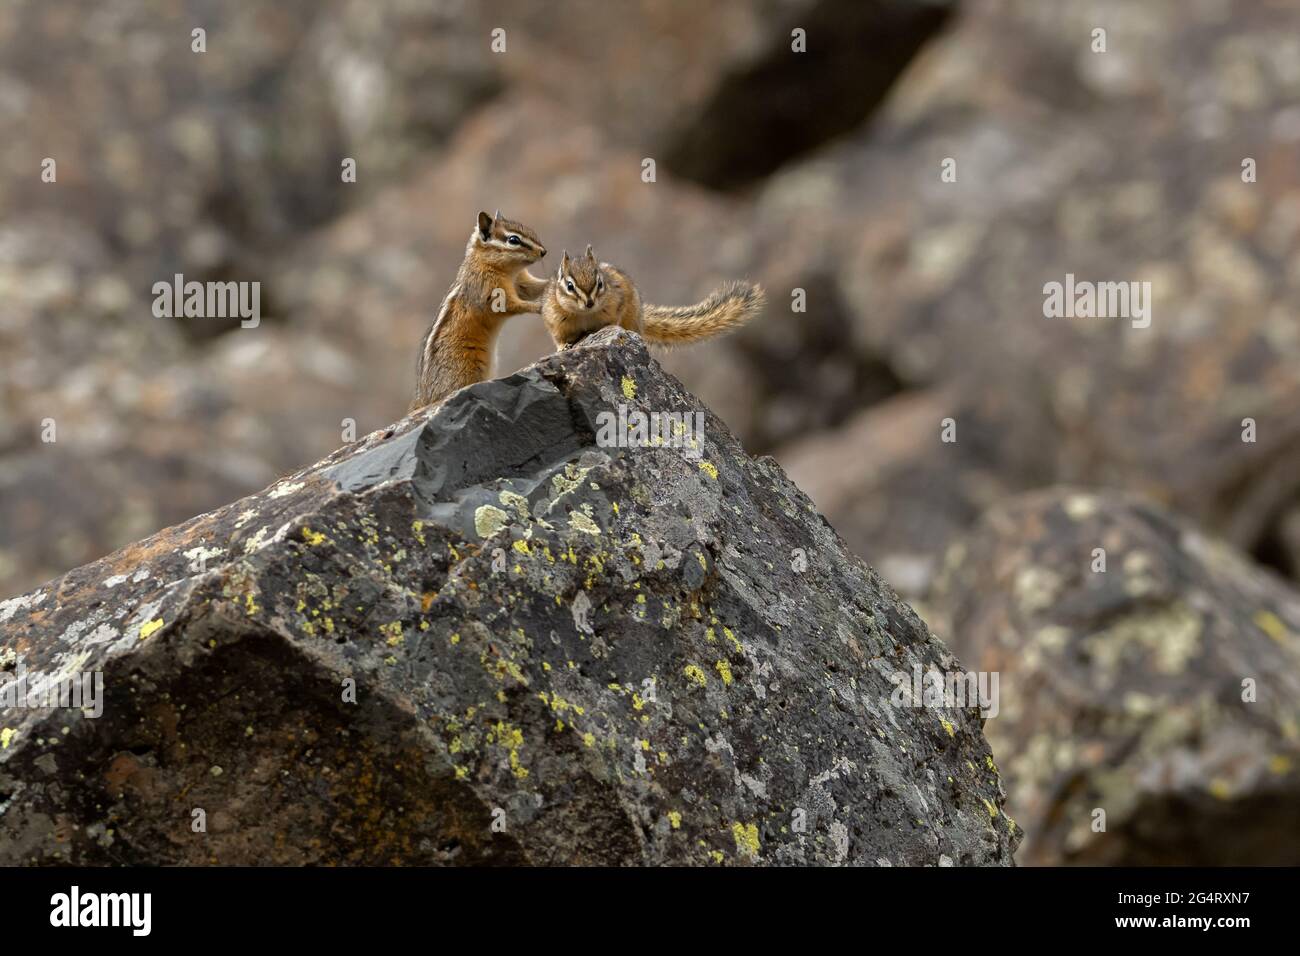 Il minimo chipmunk (Neotamias minimus) è il più piccolo membro della famiglia dei chipmunk. Parco nazionale di Yellowstone, Wyoming, Stati Uniti. Foto Stock